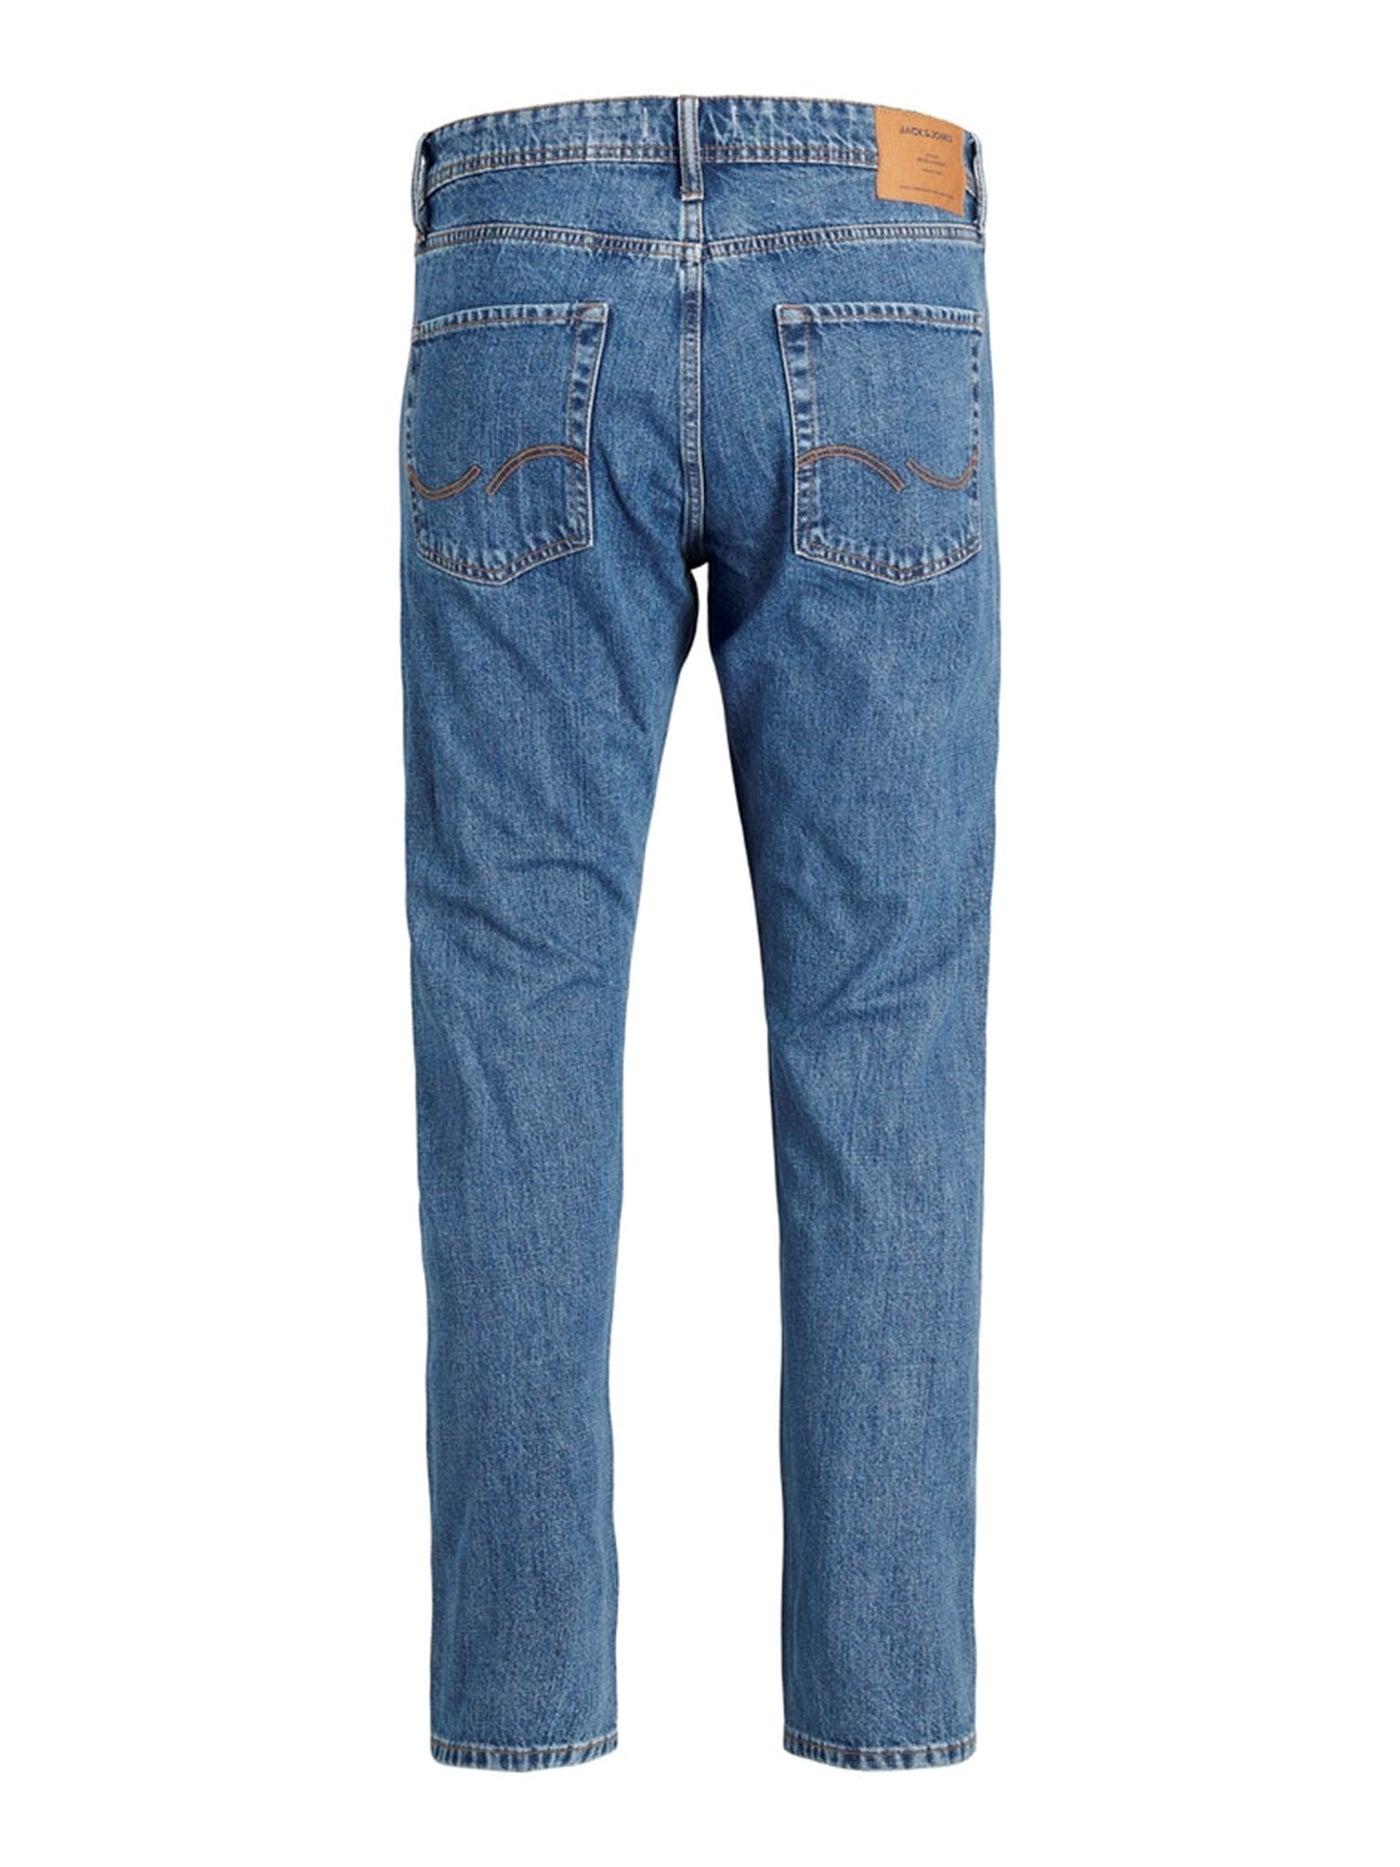 Chris jeans comfort fit - Blå Denim (regulær) - Jack & Jones - Blå 5